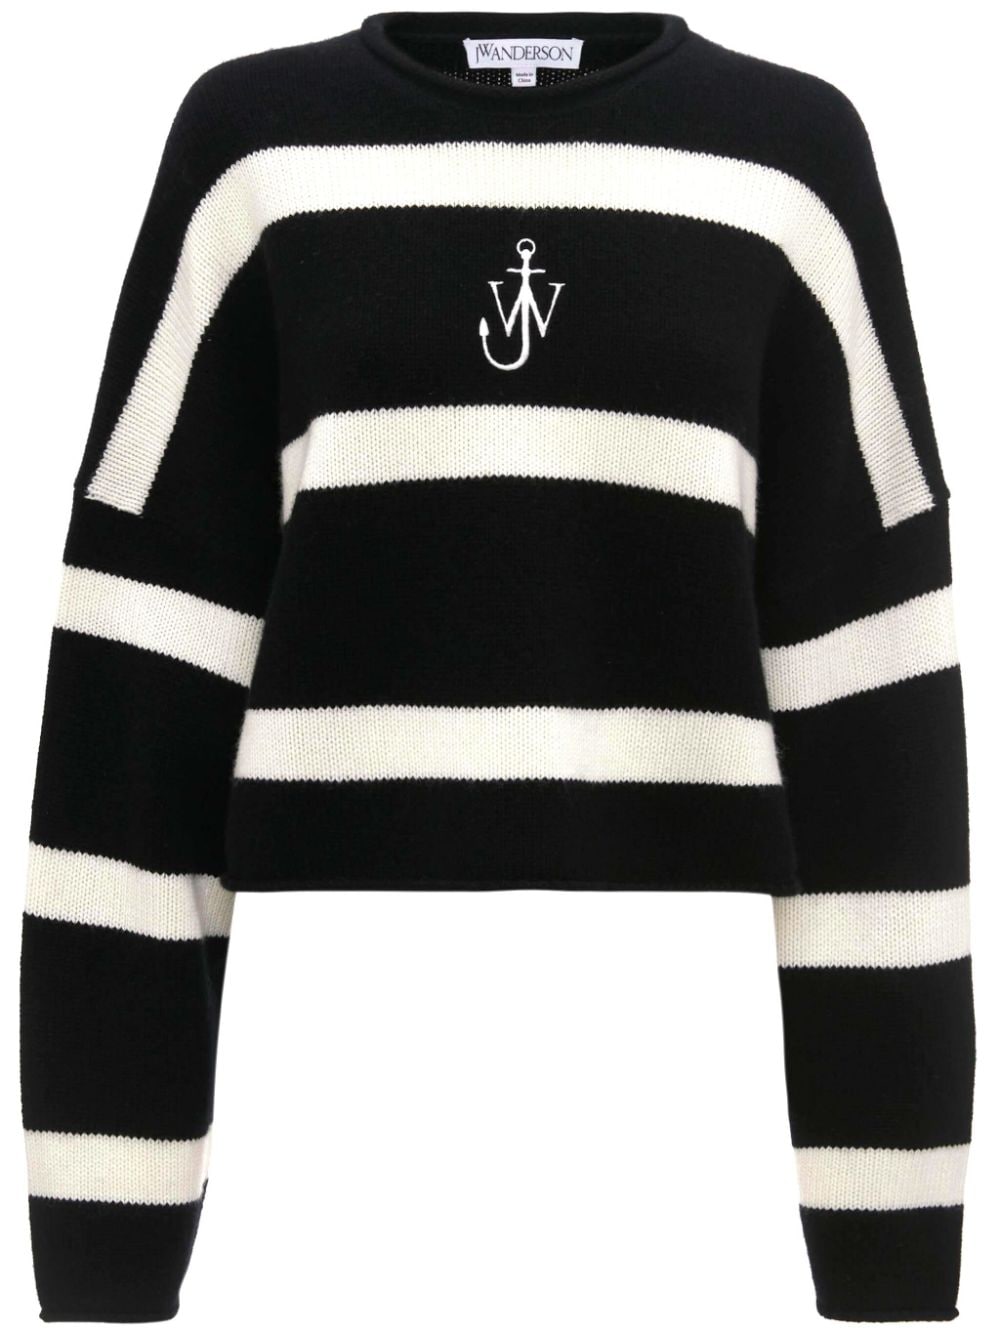 Stripe pattern sweatshirt